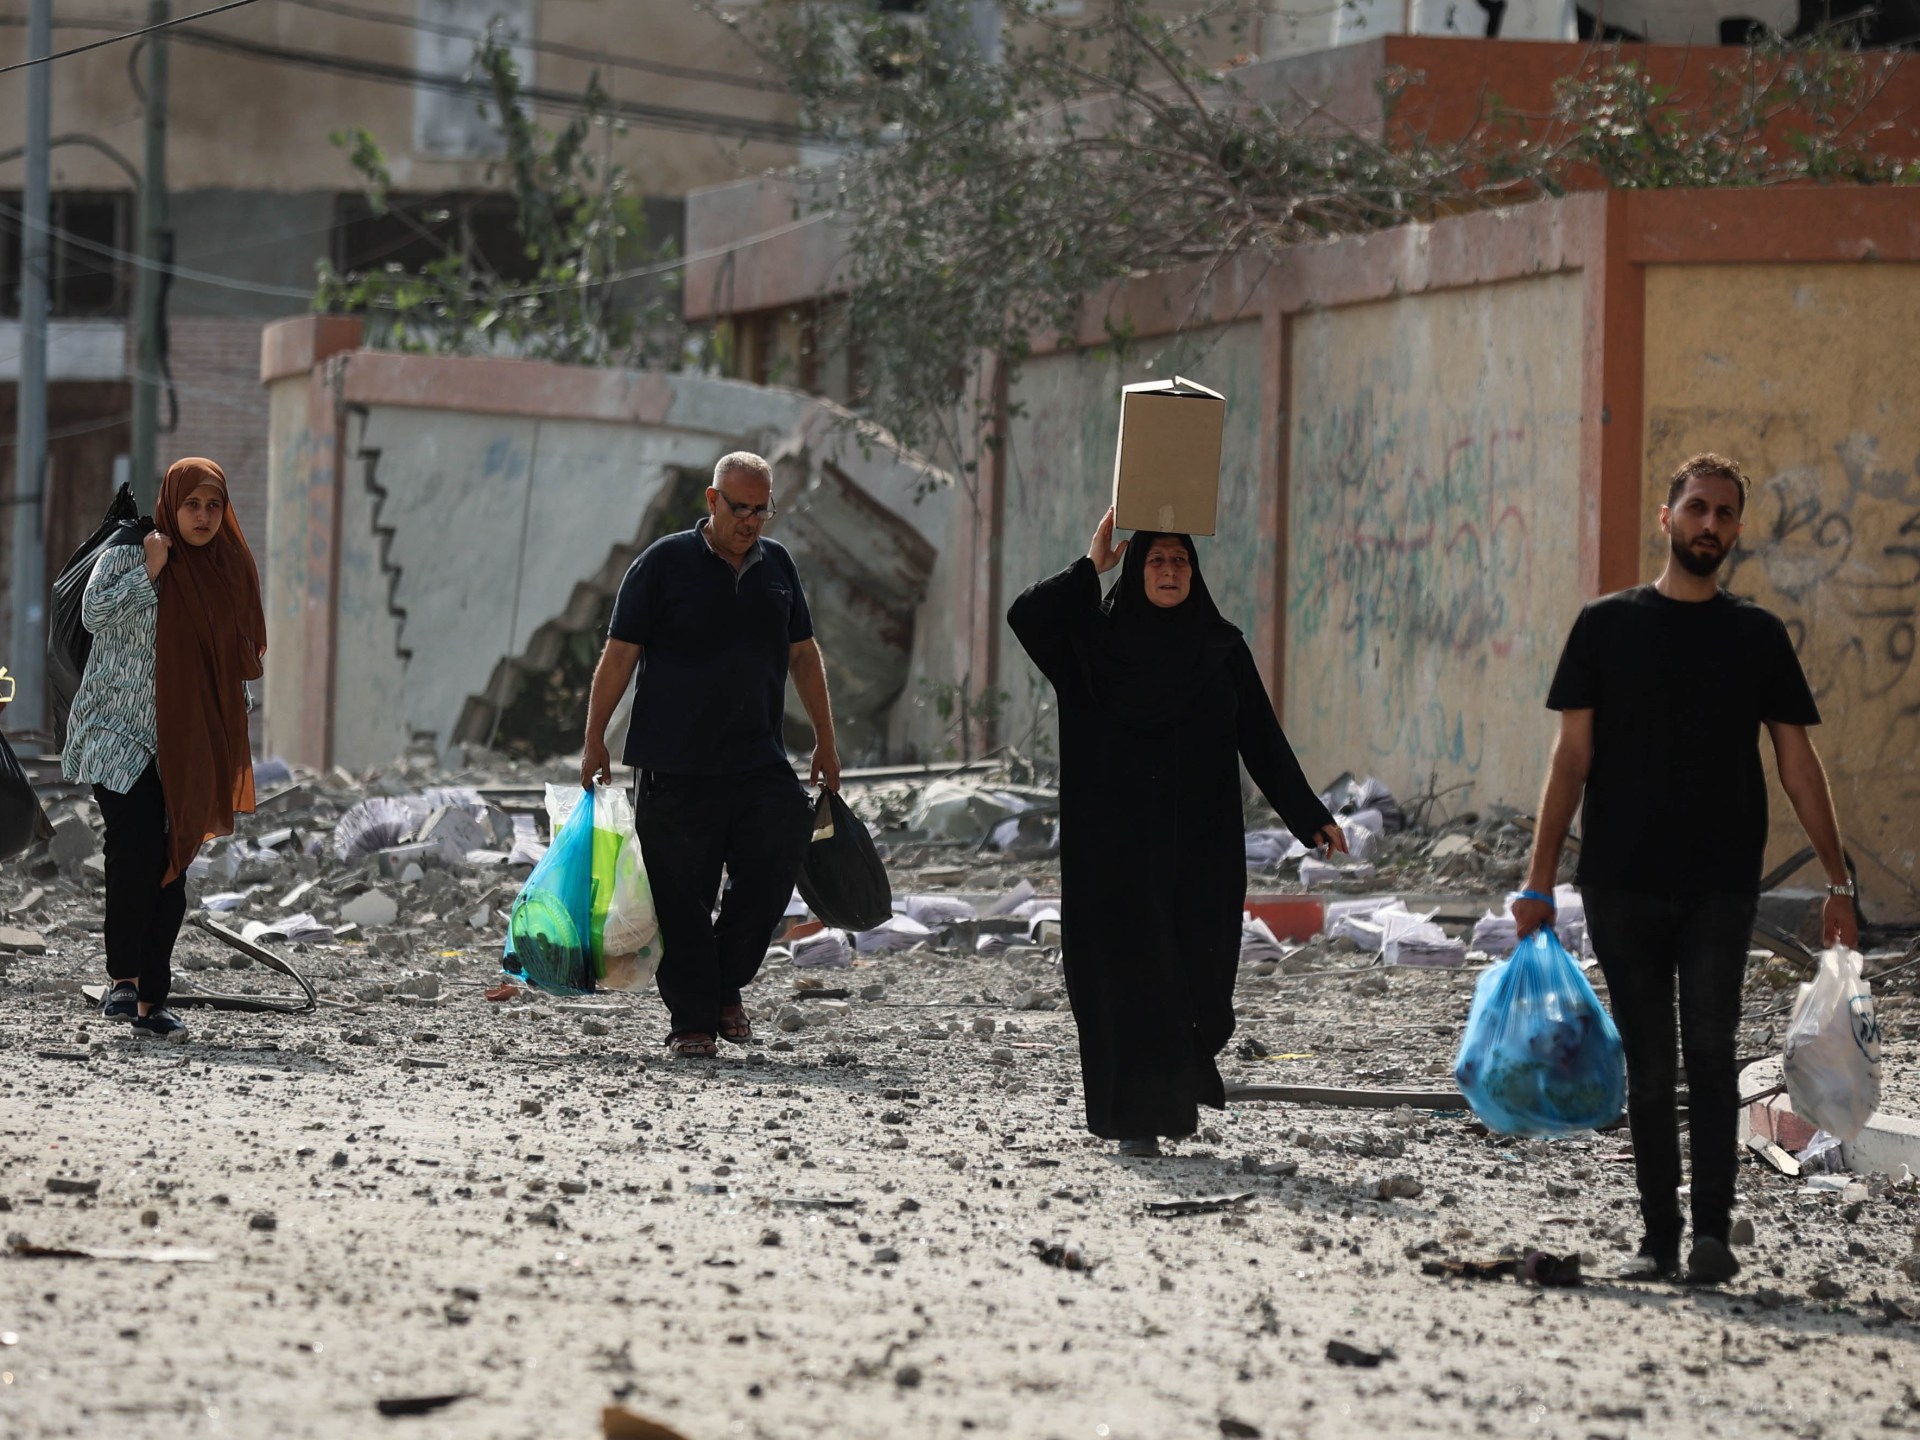 ما التهجير القسري الذي تحاول إسرائيل فرضه على سكان غزة؟ | أخبار – البوكس نيوز